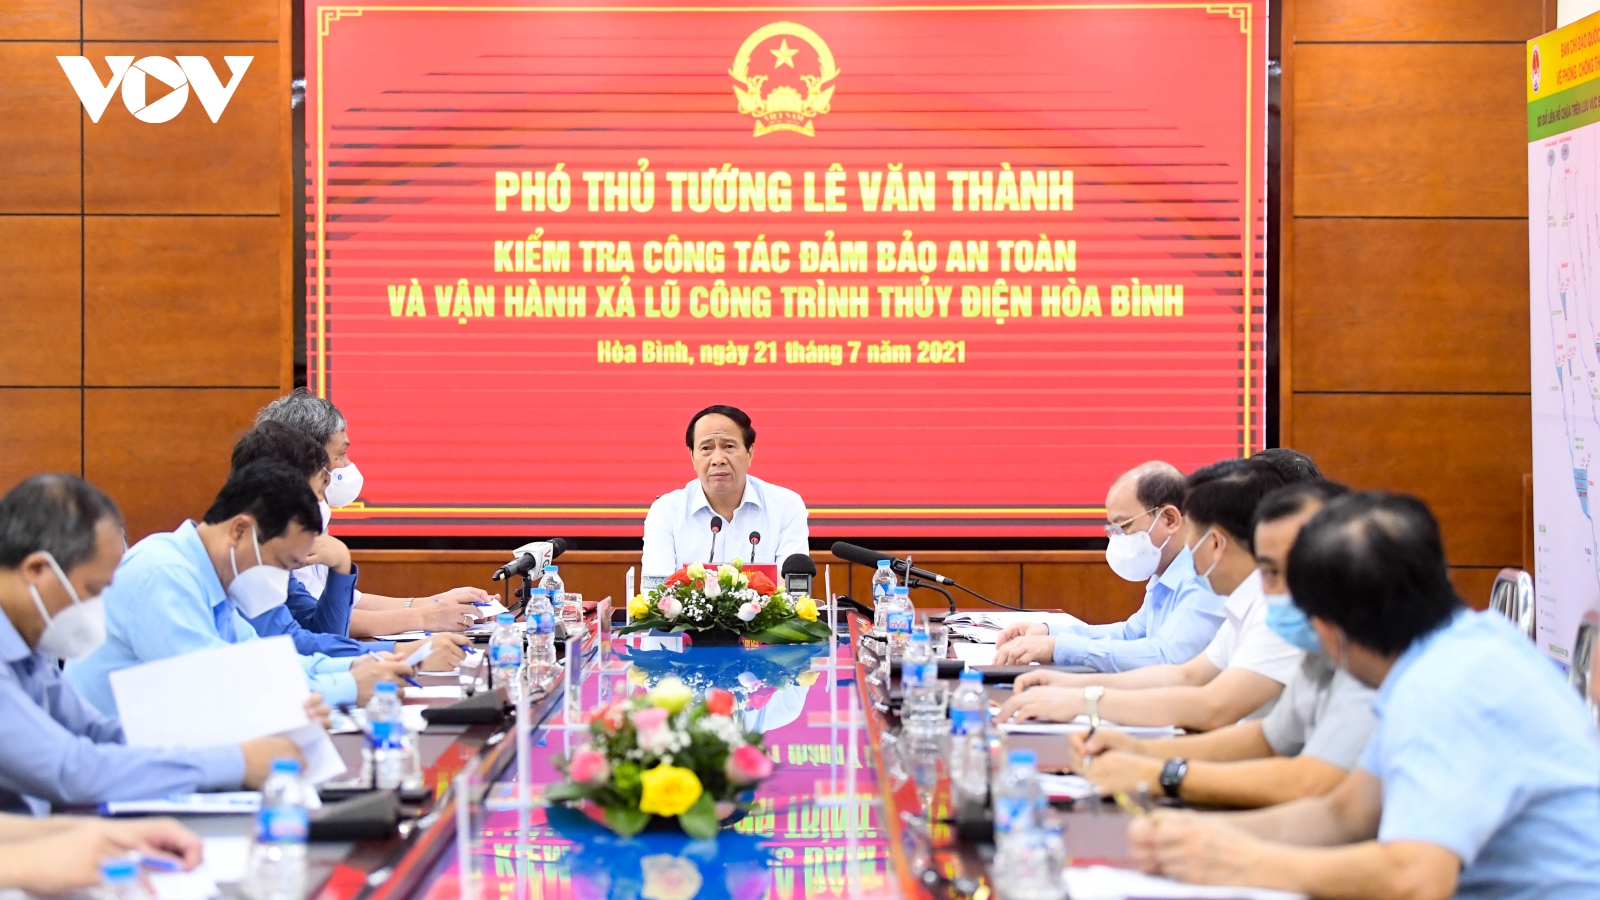 Phó Thủ tướng Lê Văn Thành: “EVN đôi khi phải hy sinh lợi ích vì việc chung”